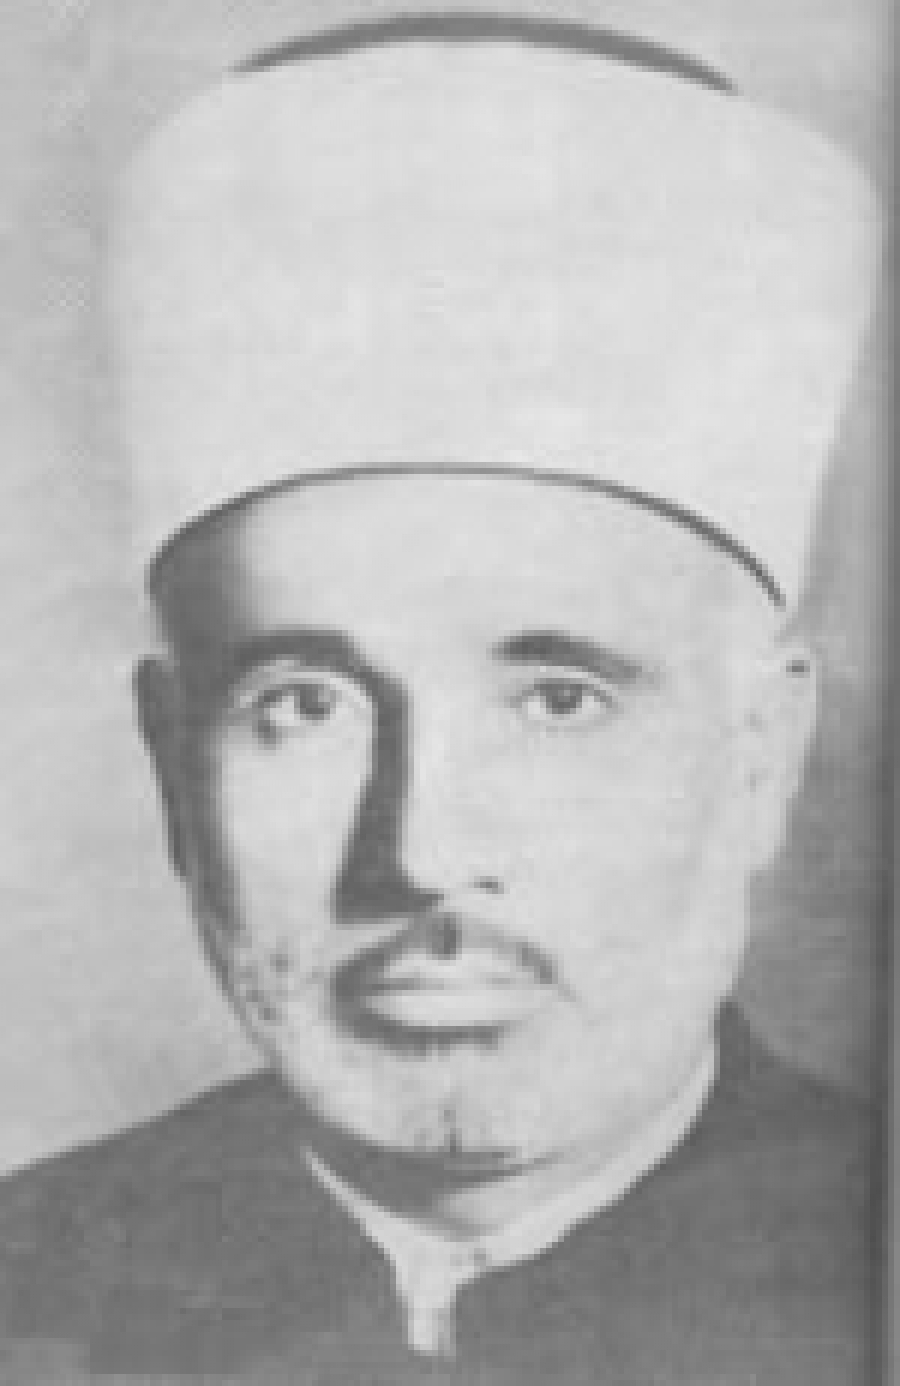 Sheikh Muhammad Taqiuddin al-Nabhani